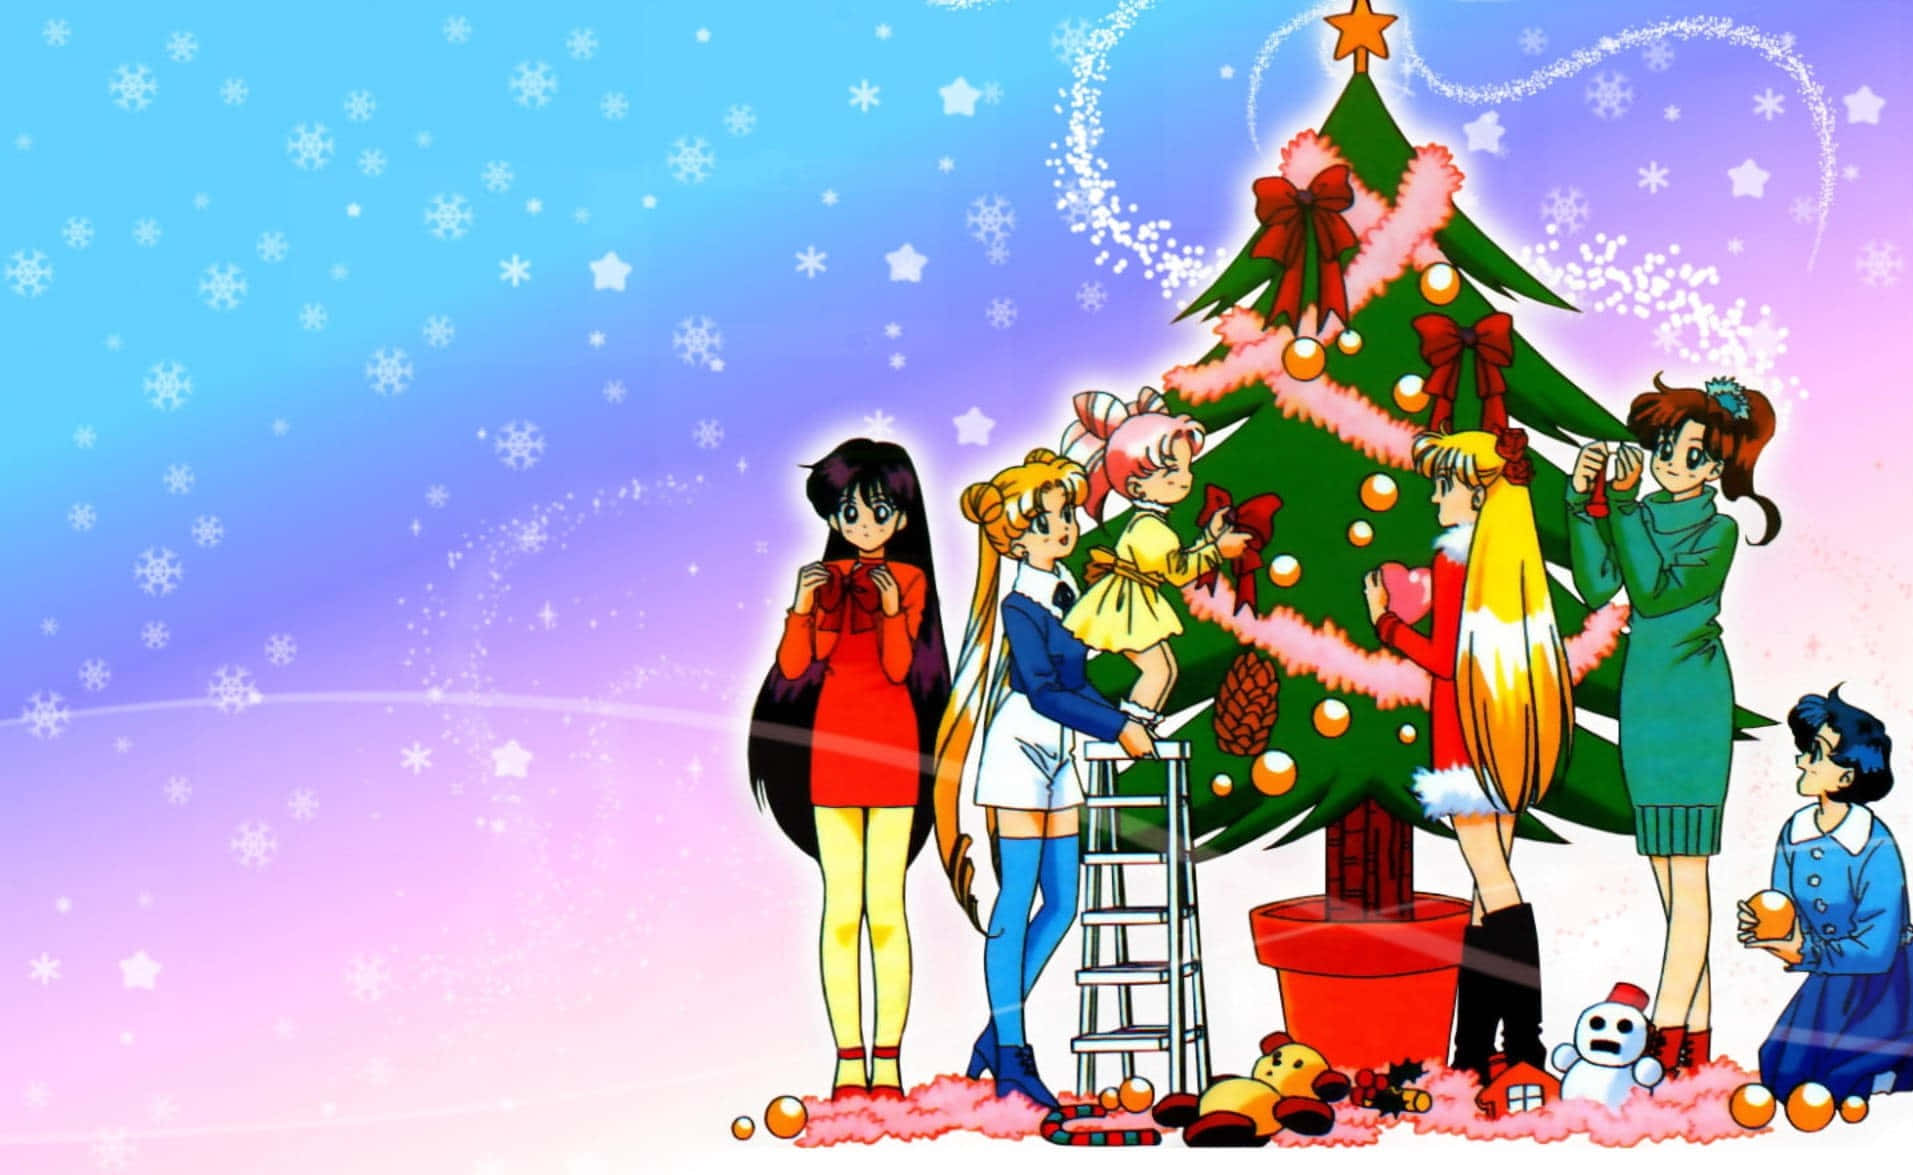 Feiernsie Die Feiertage Mit Einem Besonderen Anime Weihnachten!